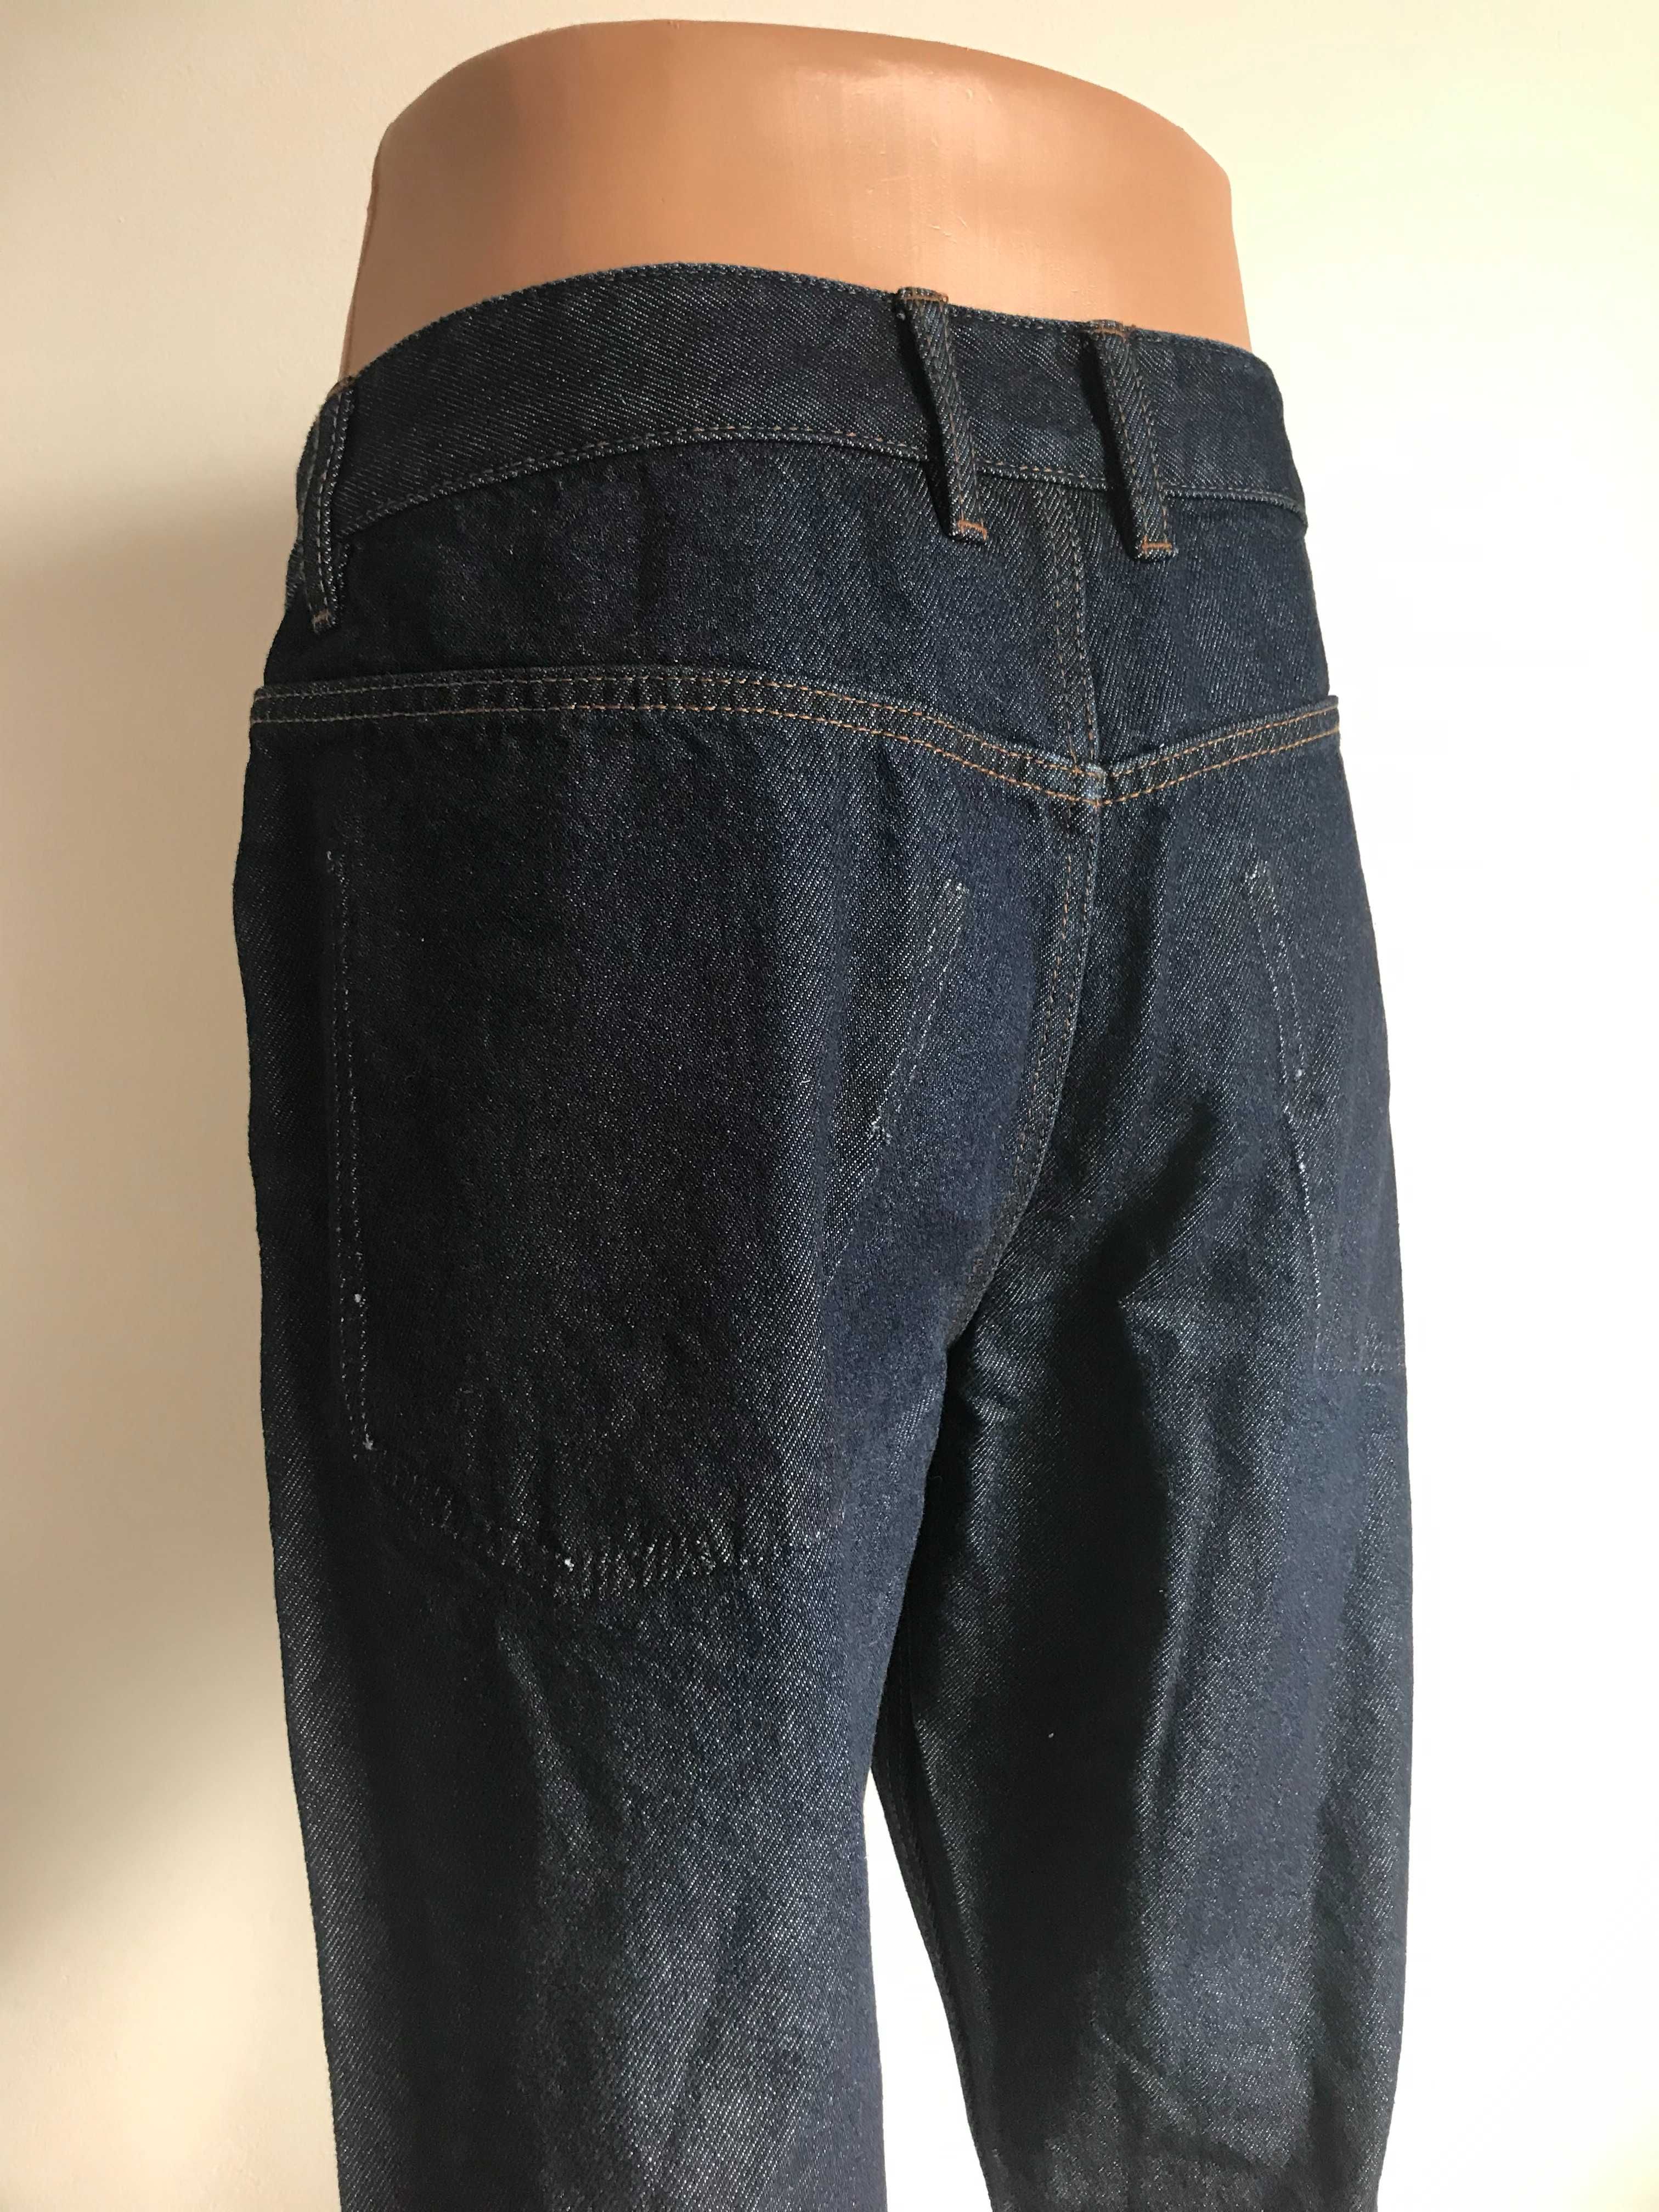 Nowe jeansy dzinsy meskie spodnie granat ciete nogawki M